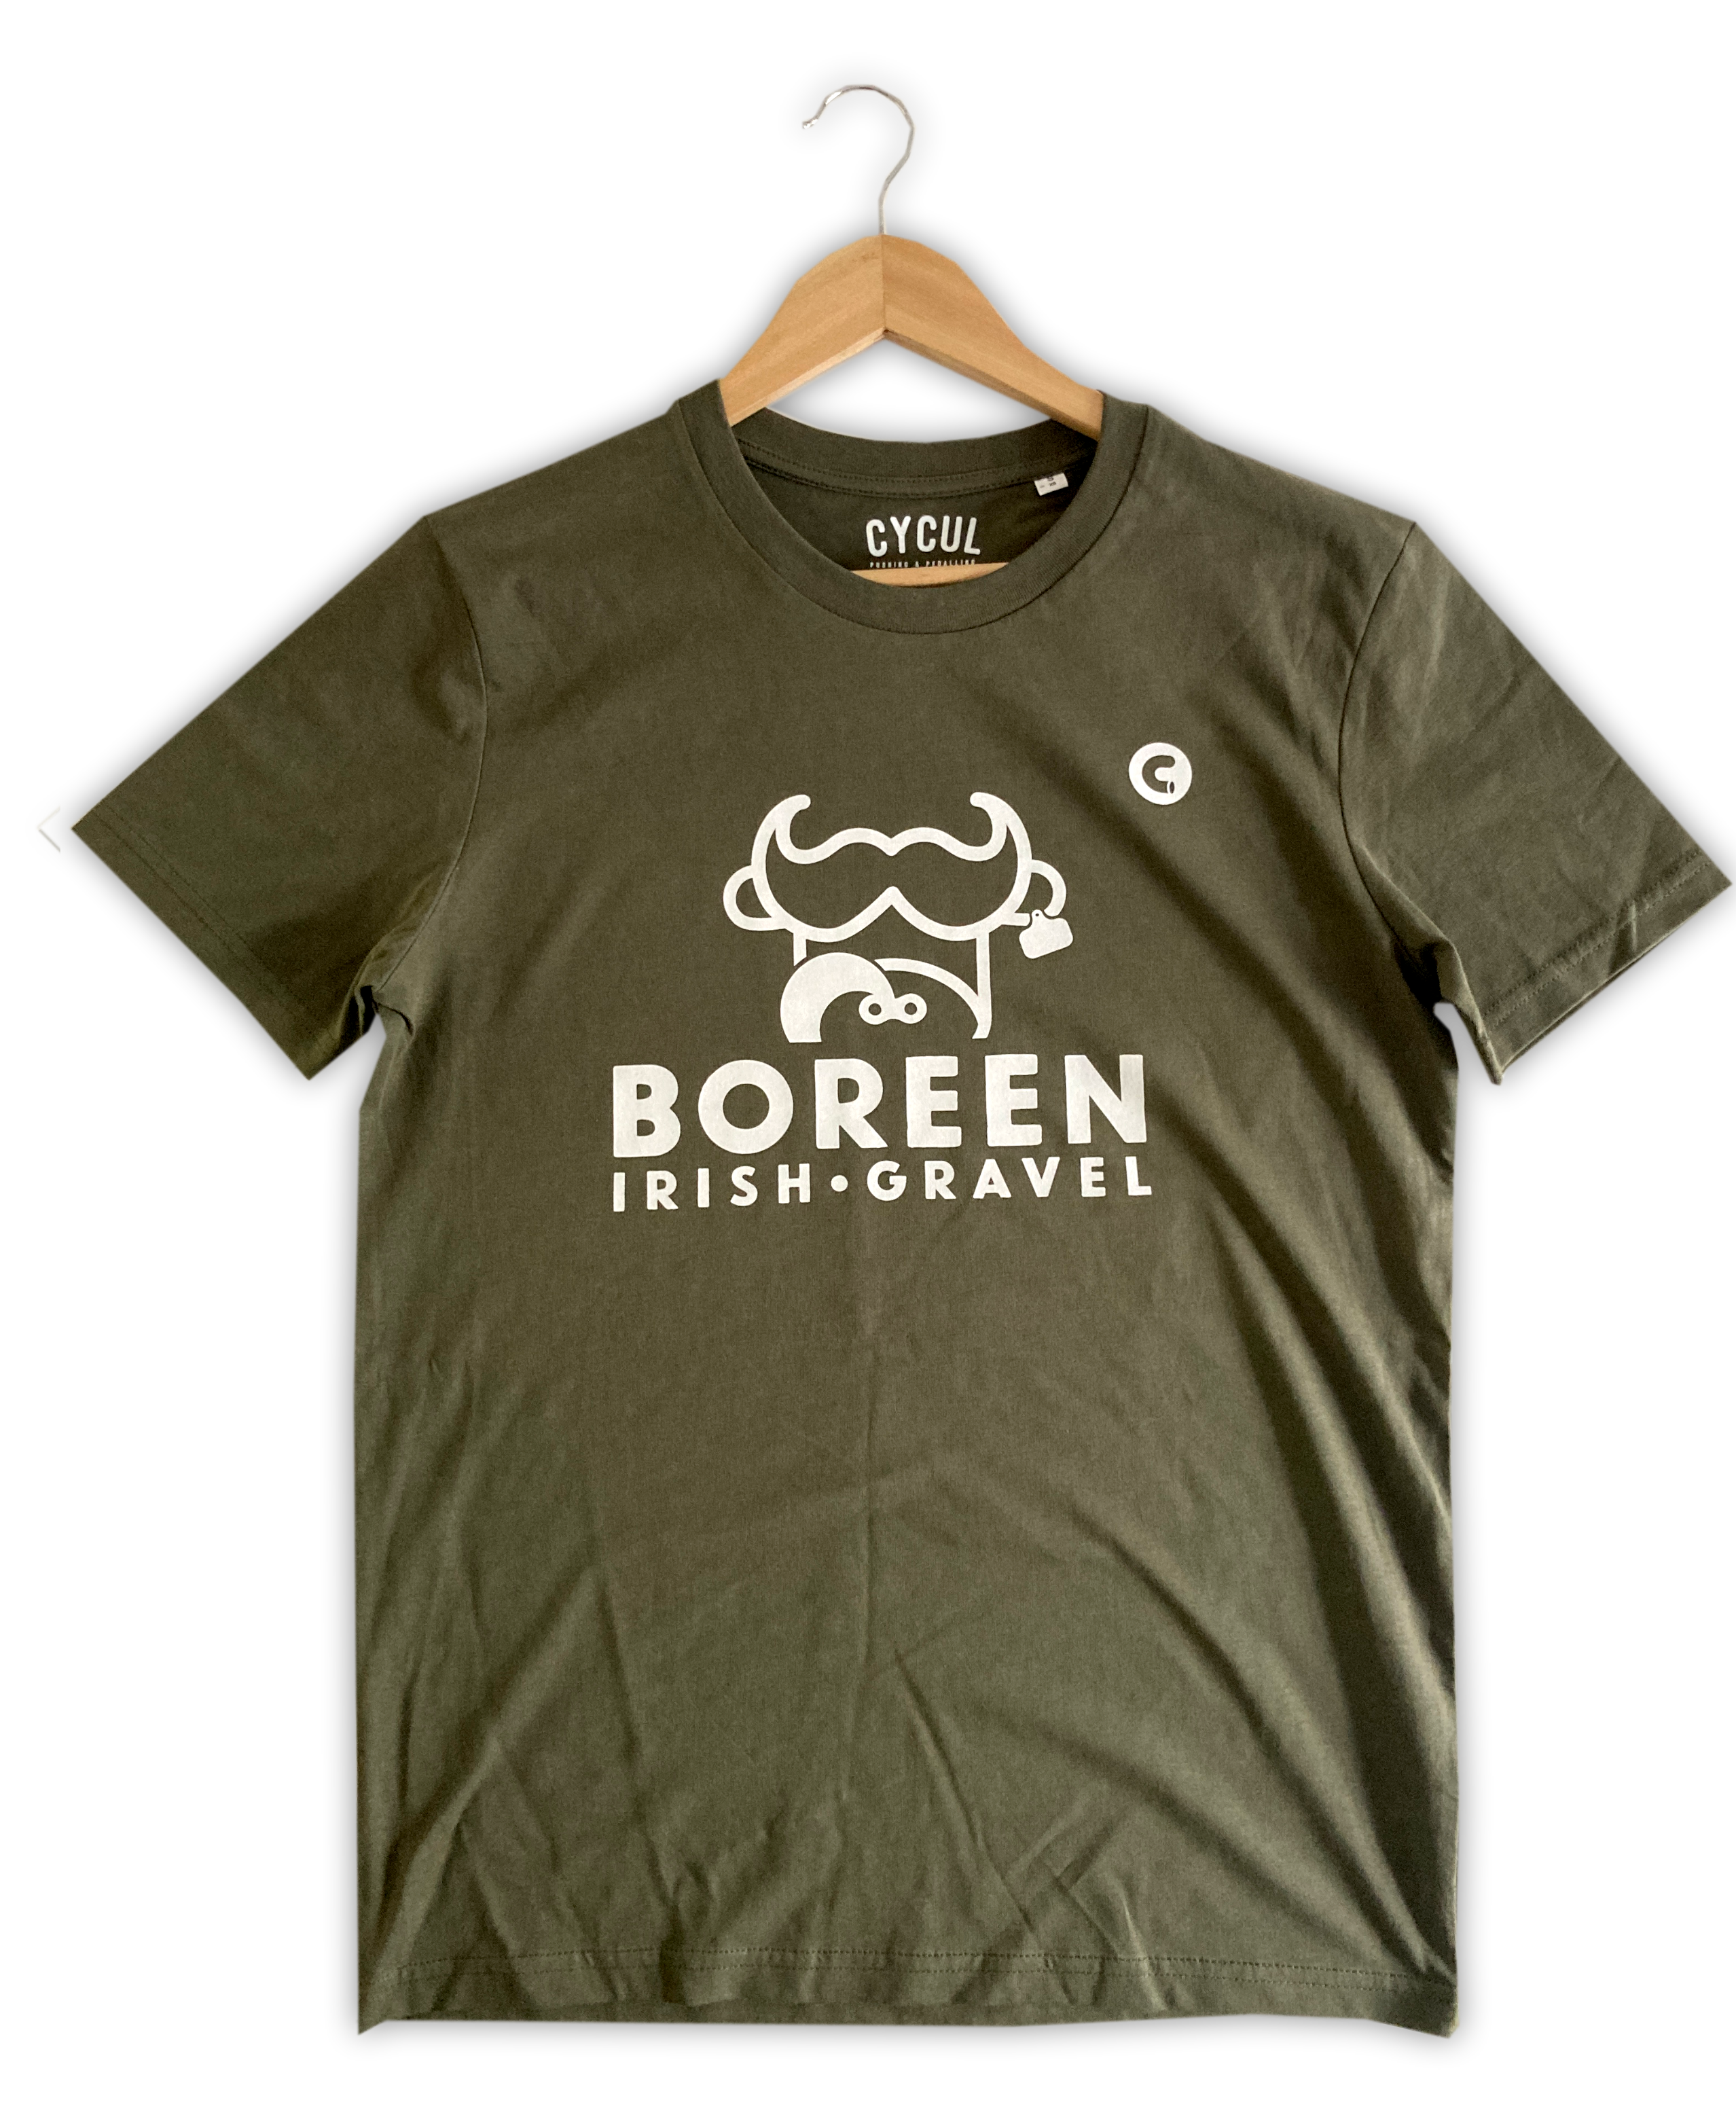 Boreen: Irish Gravel